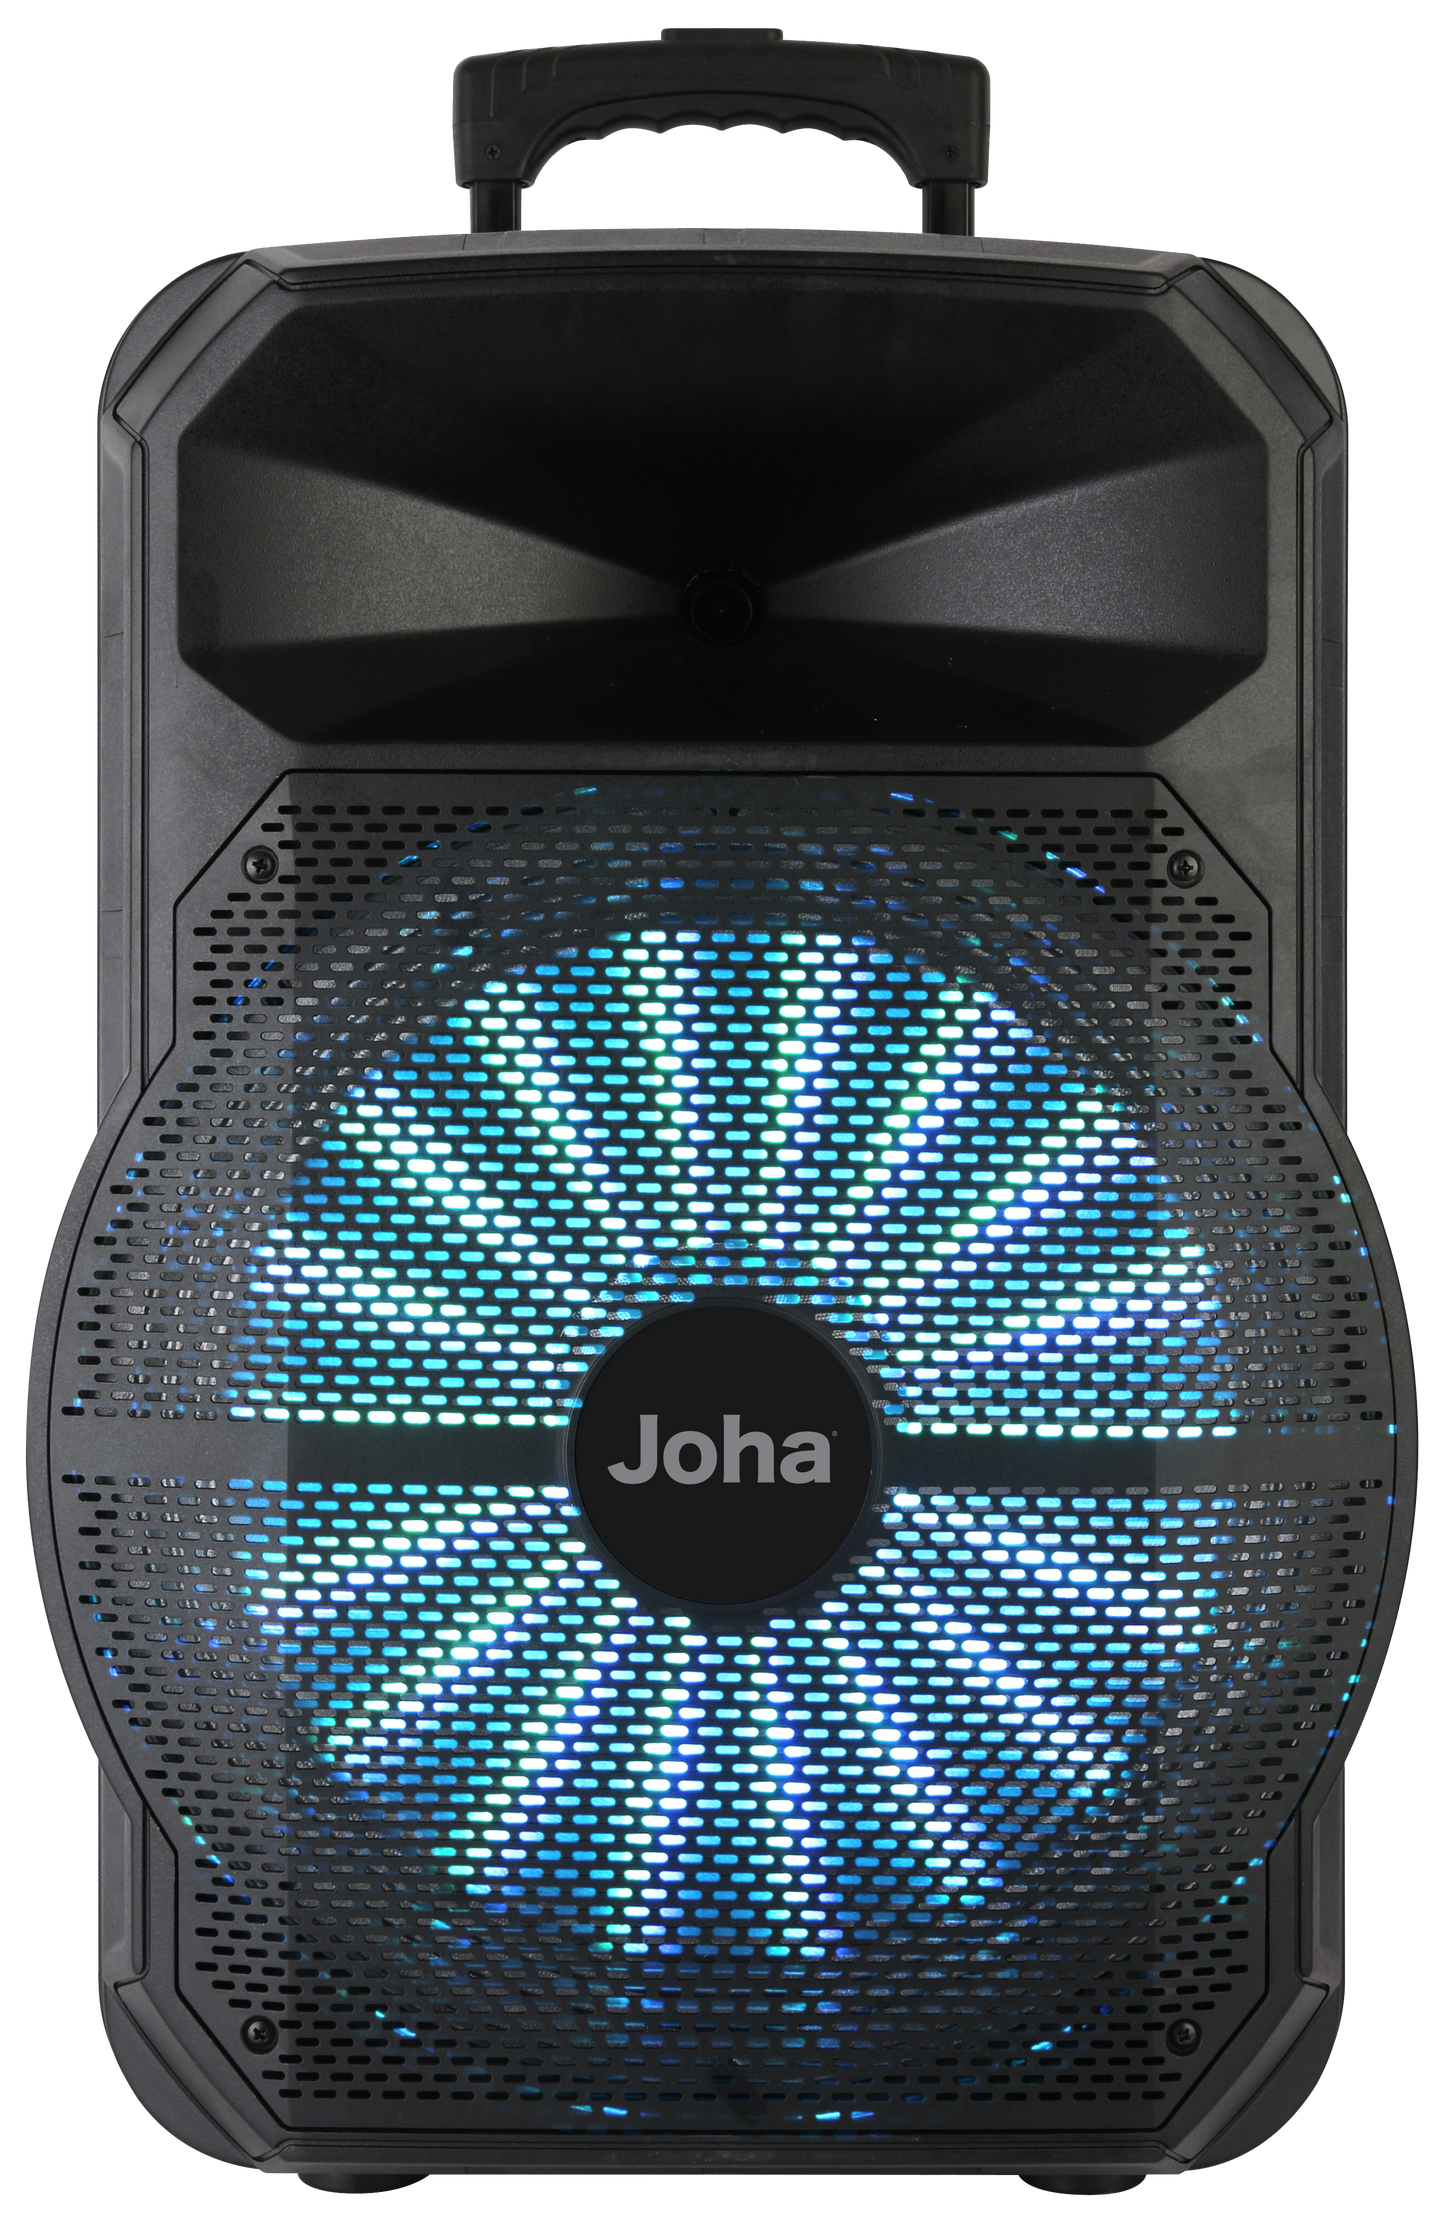 Joha Wireless Speaker (JOHA-1012SM)